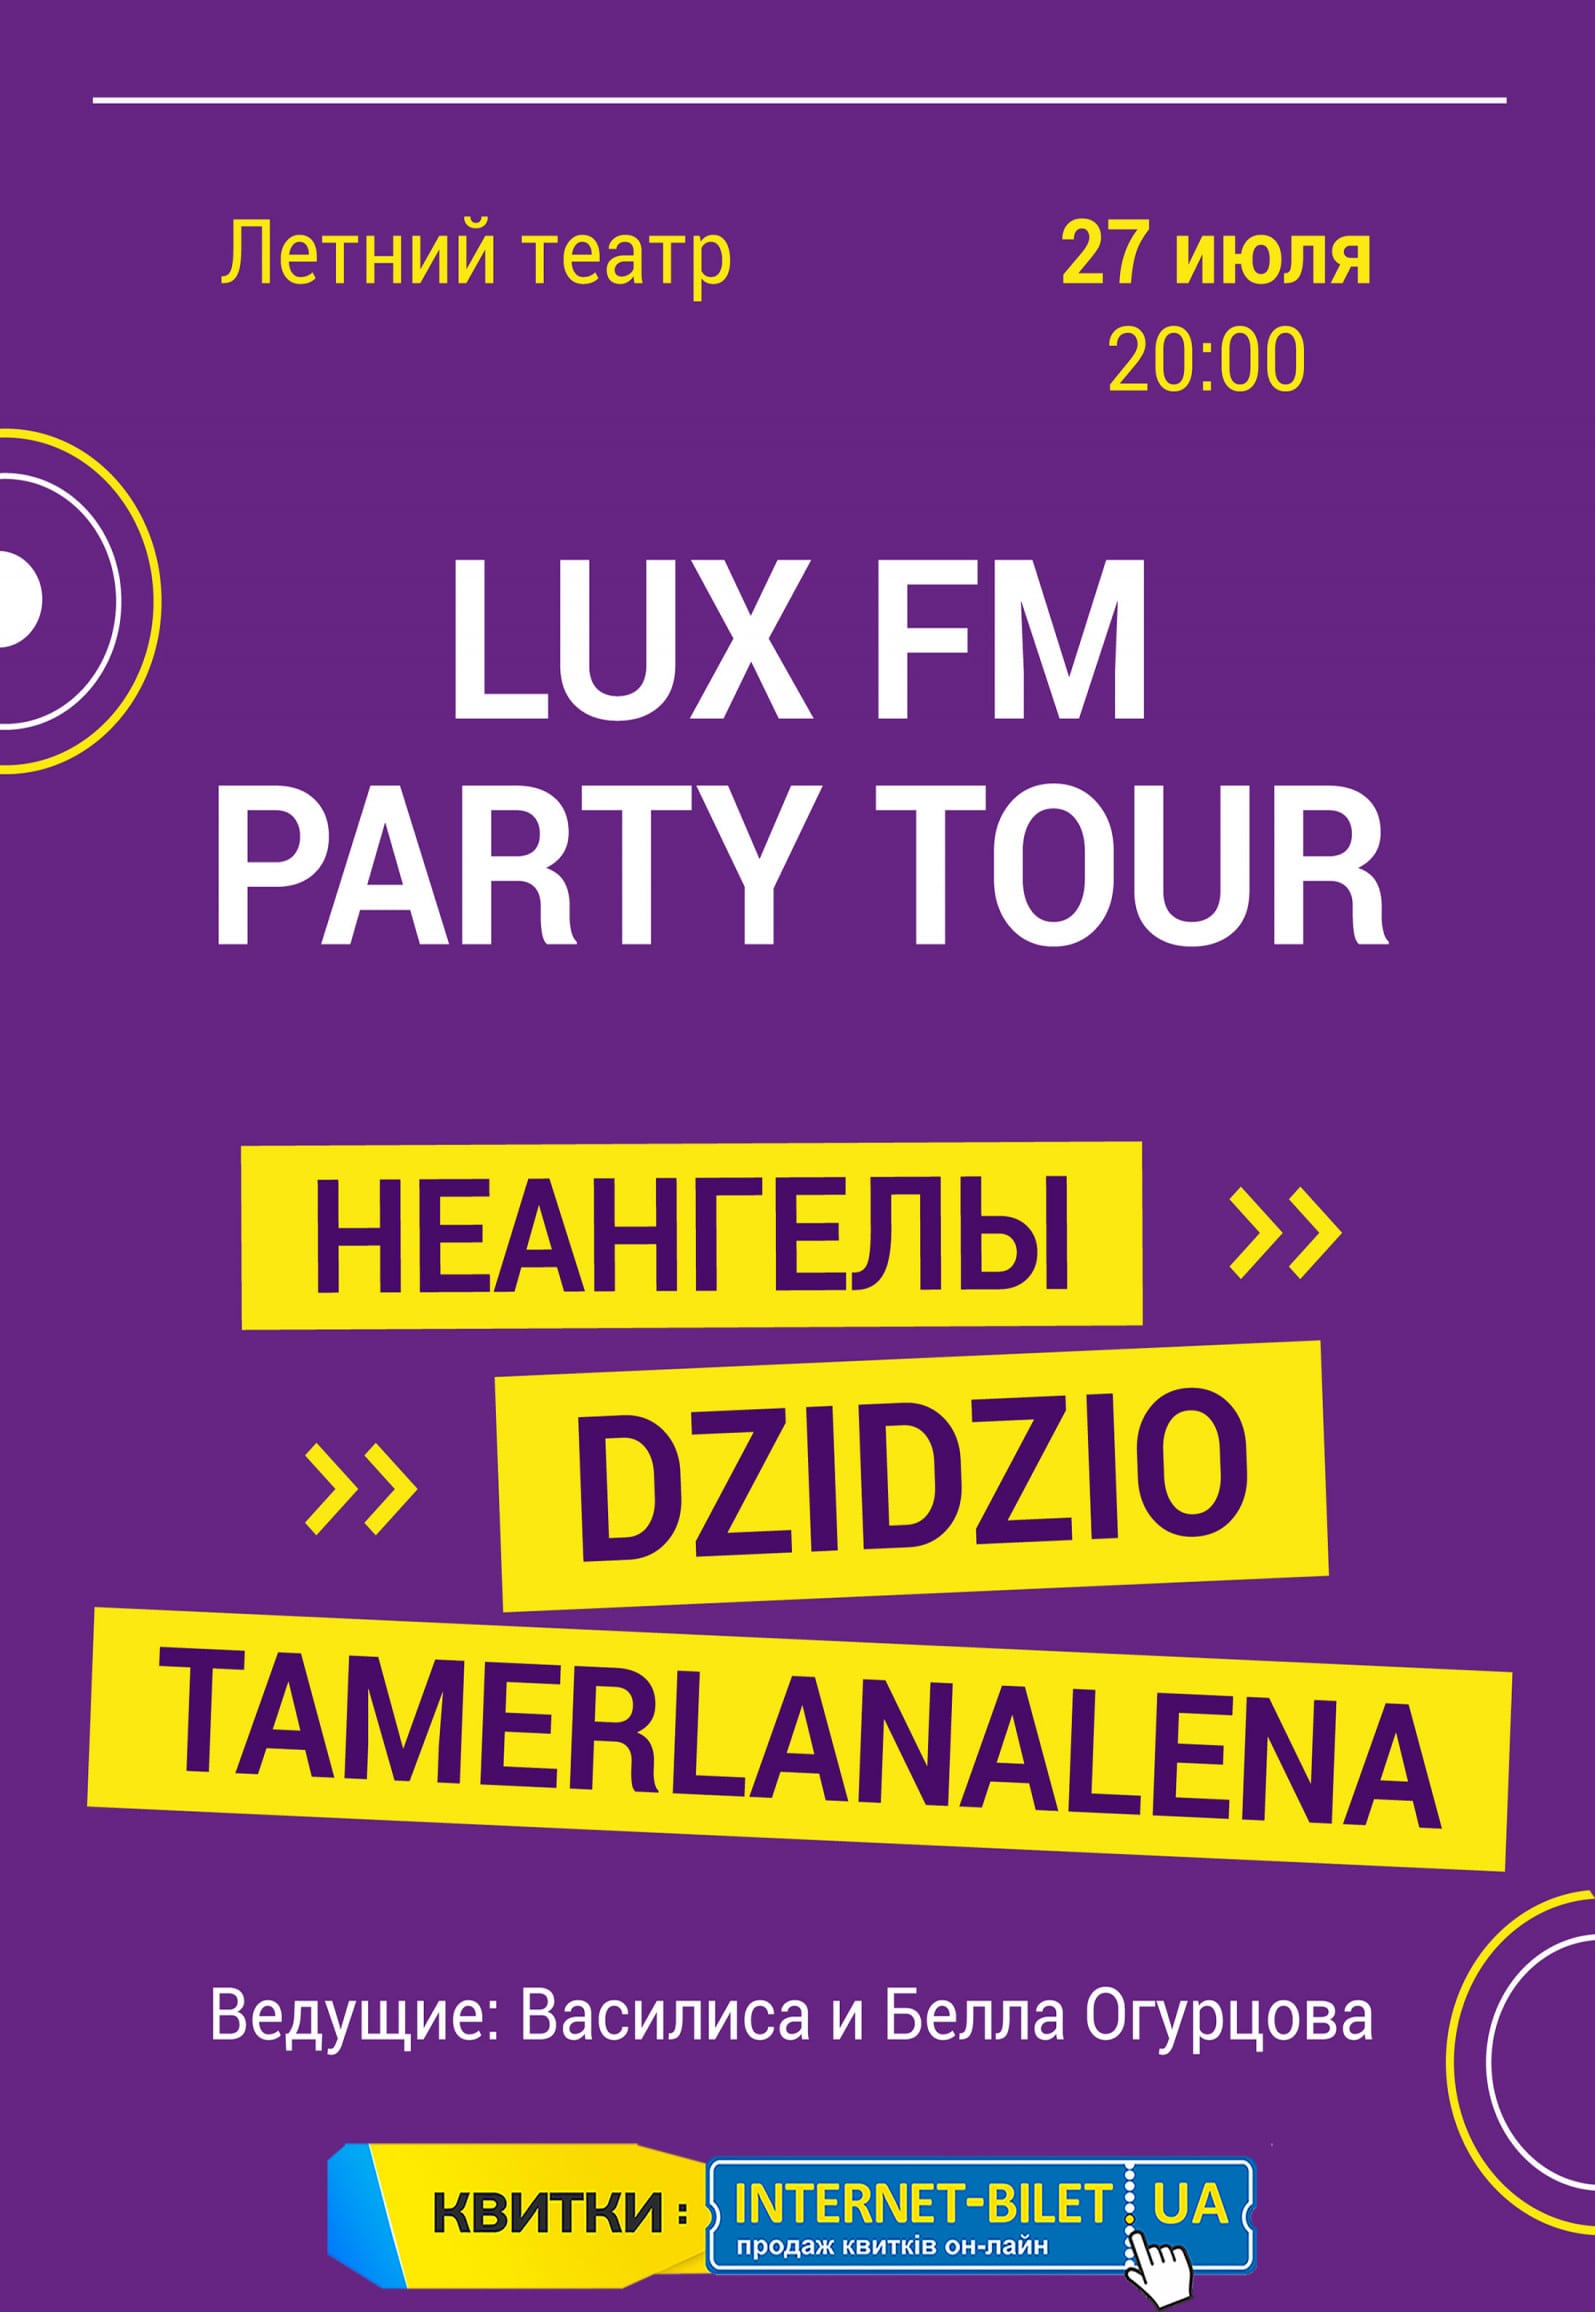 Lux FM Party Tour Днепр, 27.07.19, цена, купить билеты. Афиша Днепра